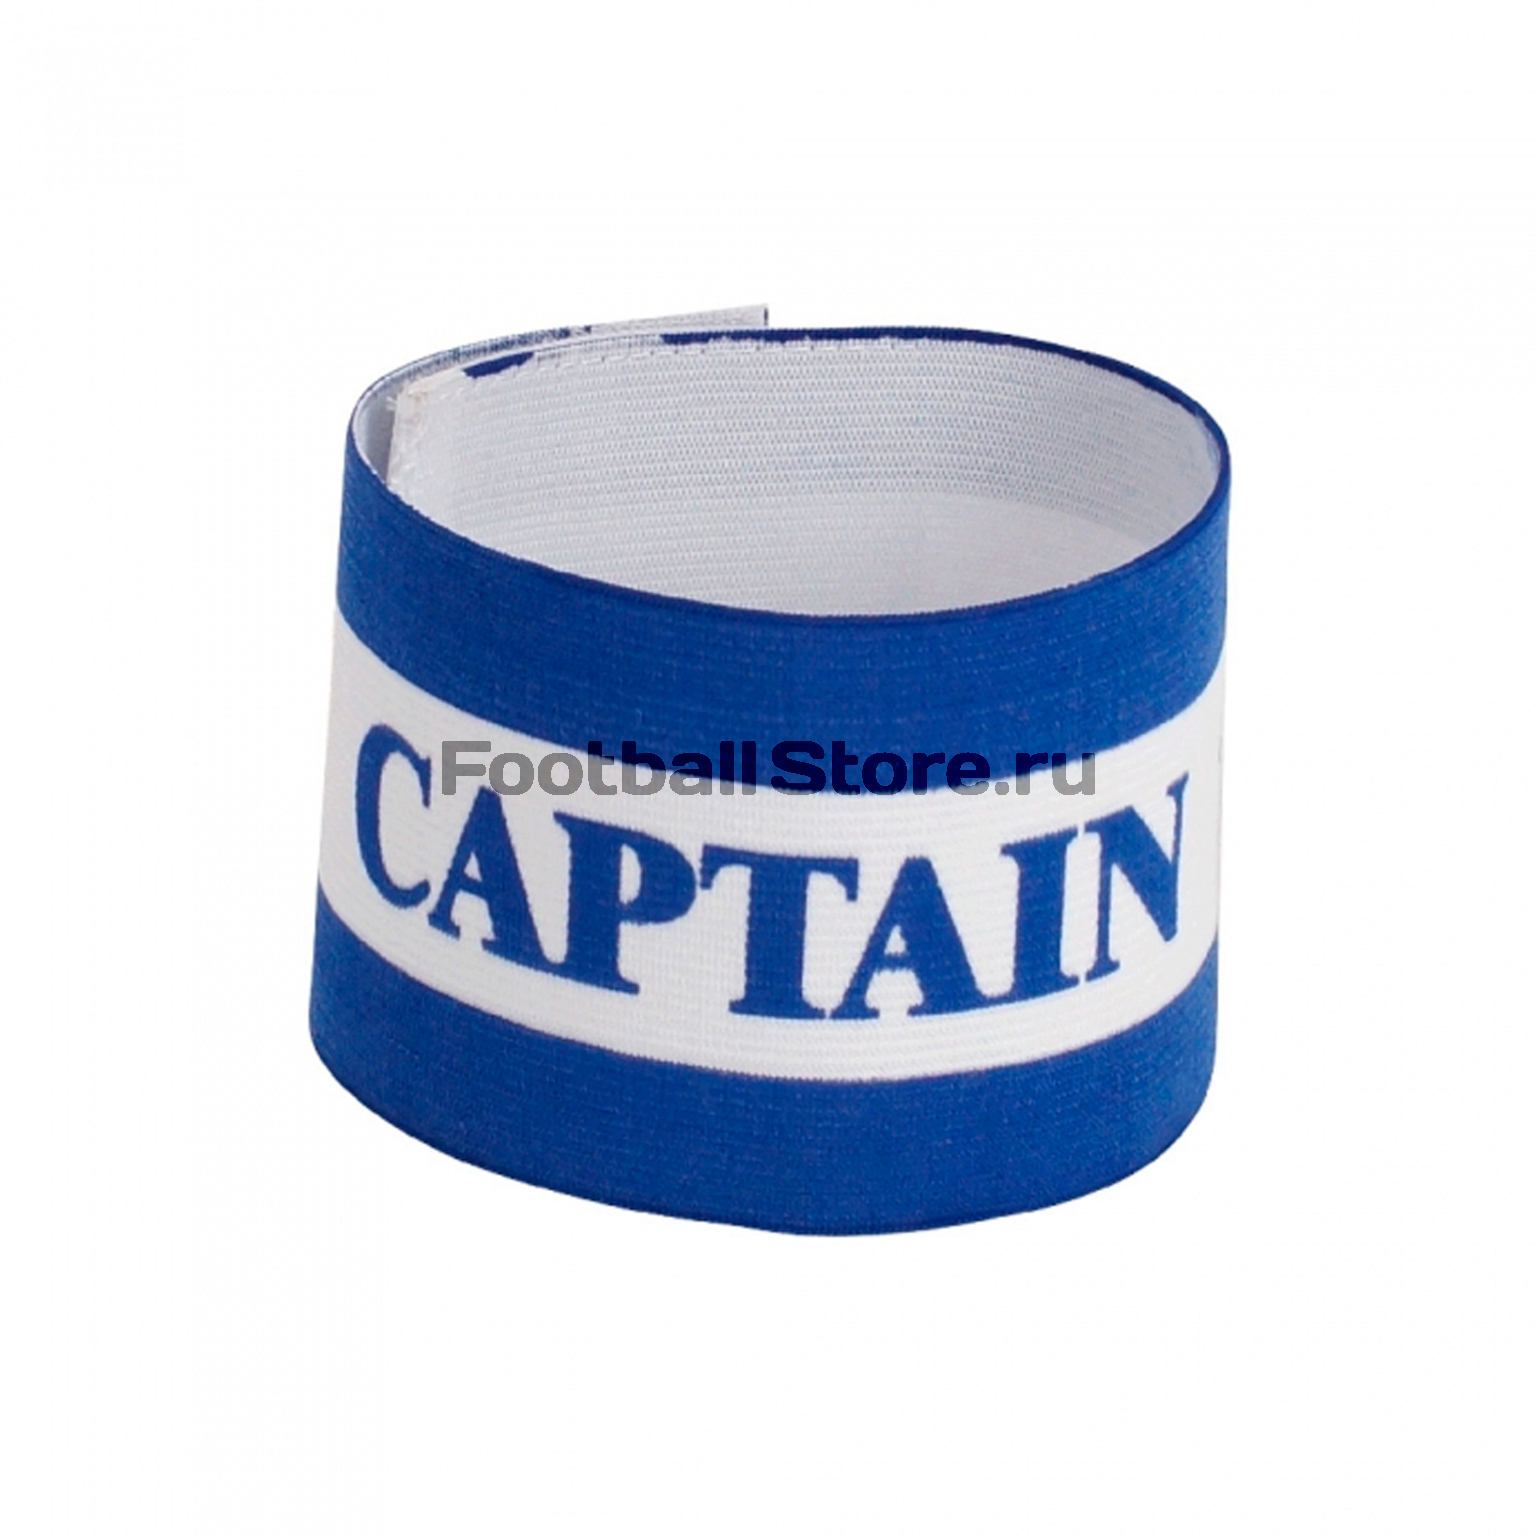 Капитанская повязка Umbro (синий/белый)